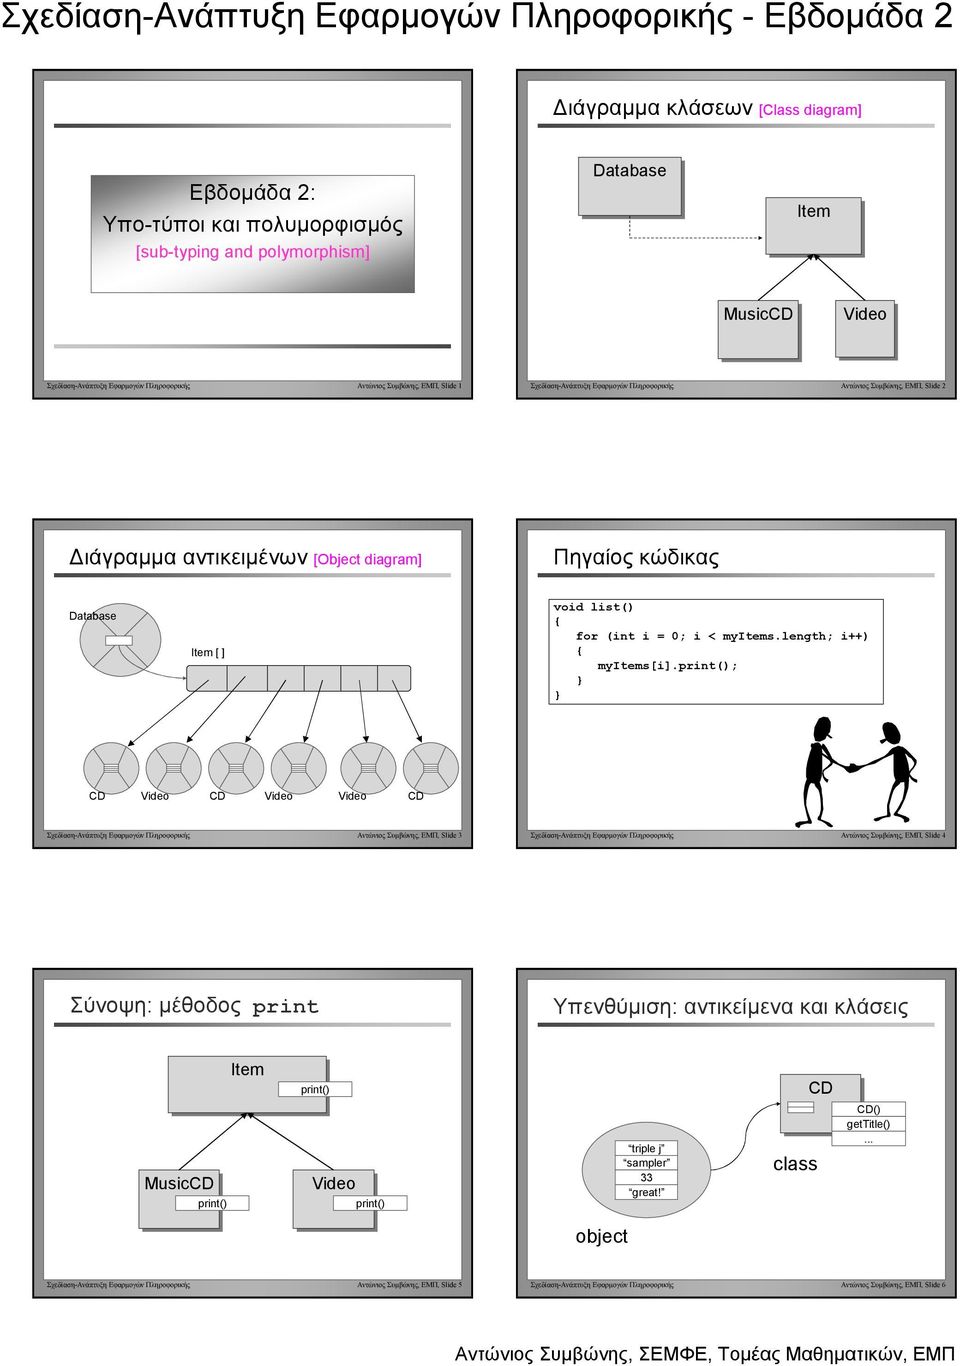 ; Σχεδίαση-Ανάπτυξη Εφαρµογών Πληροφορικής Αντώνιος Συµβώνης, ΕΜΠ, Slide 3 Σχεδίαση-Ανάπτυξη Εφαρµογών Πληροφορικής Αντώνιος Συµβώνης, ΕΜΠ, Slide 4 Σύνοψη: µέθοδος print Υπενθύµιση: αντικείµενα